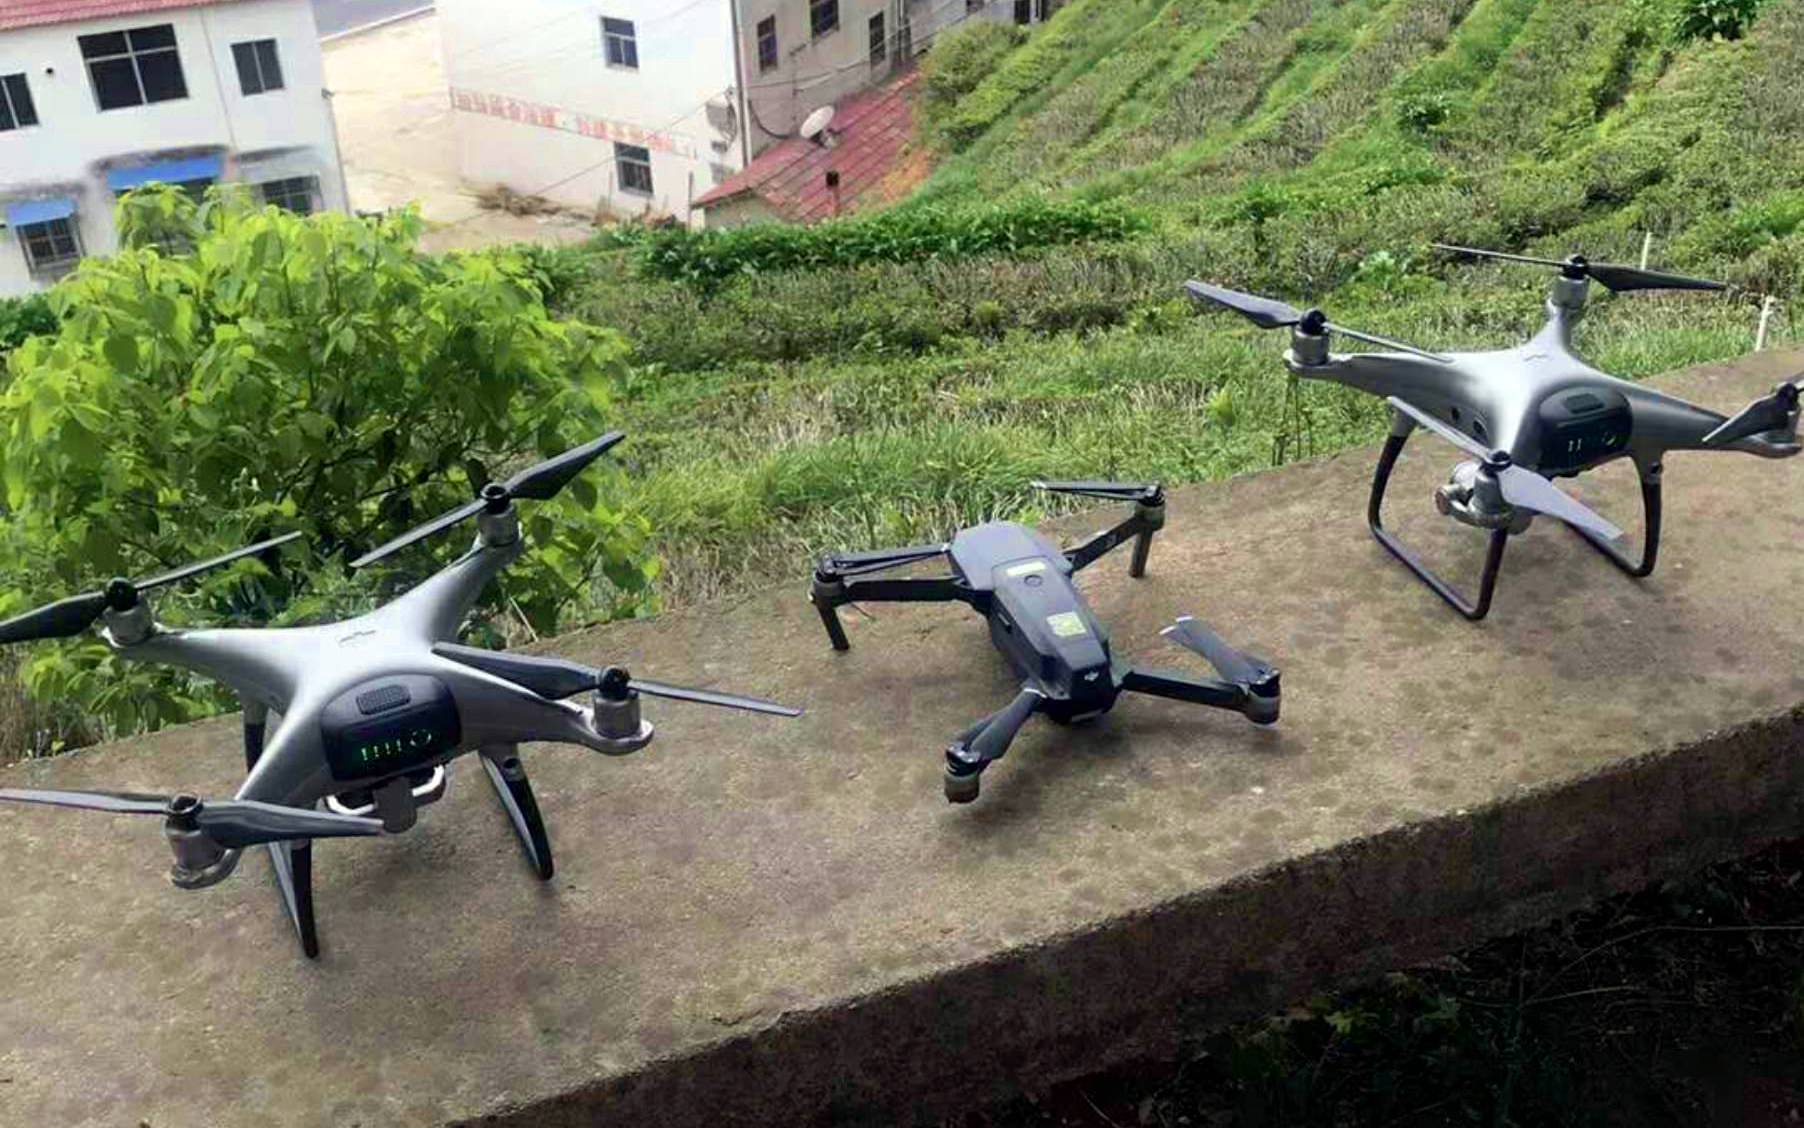 new dji drone phantom 5